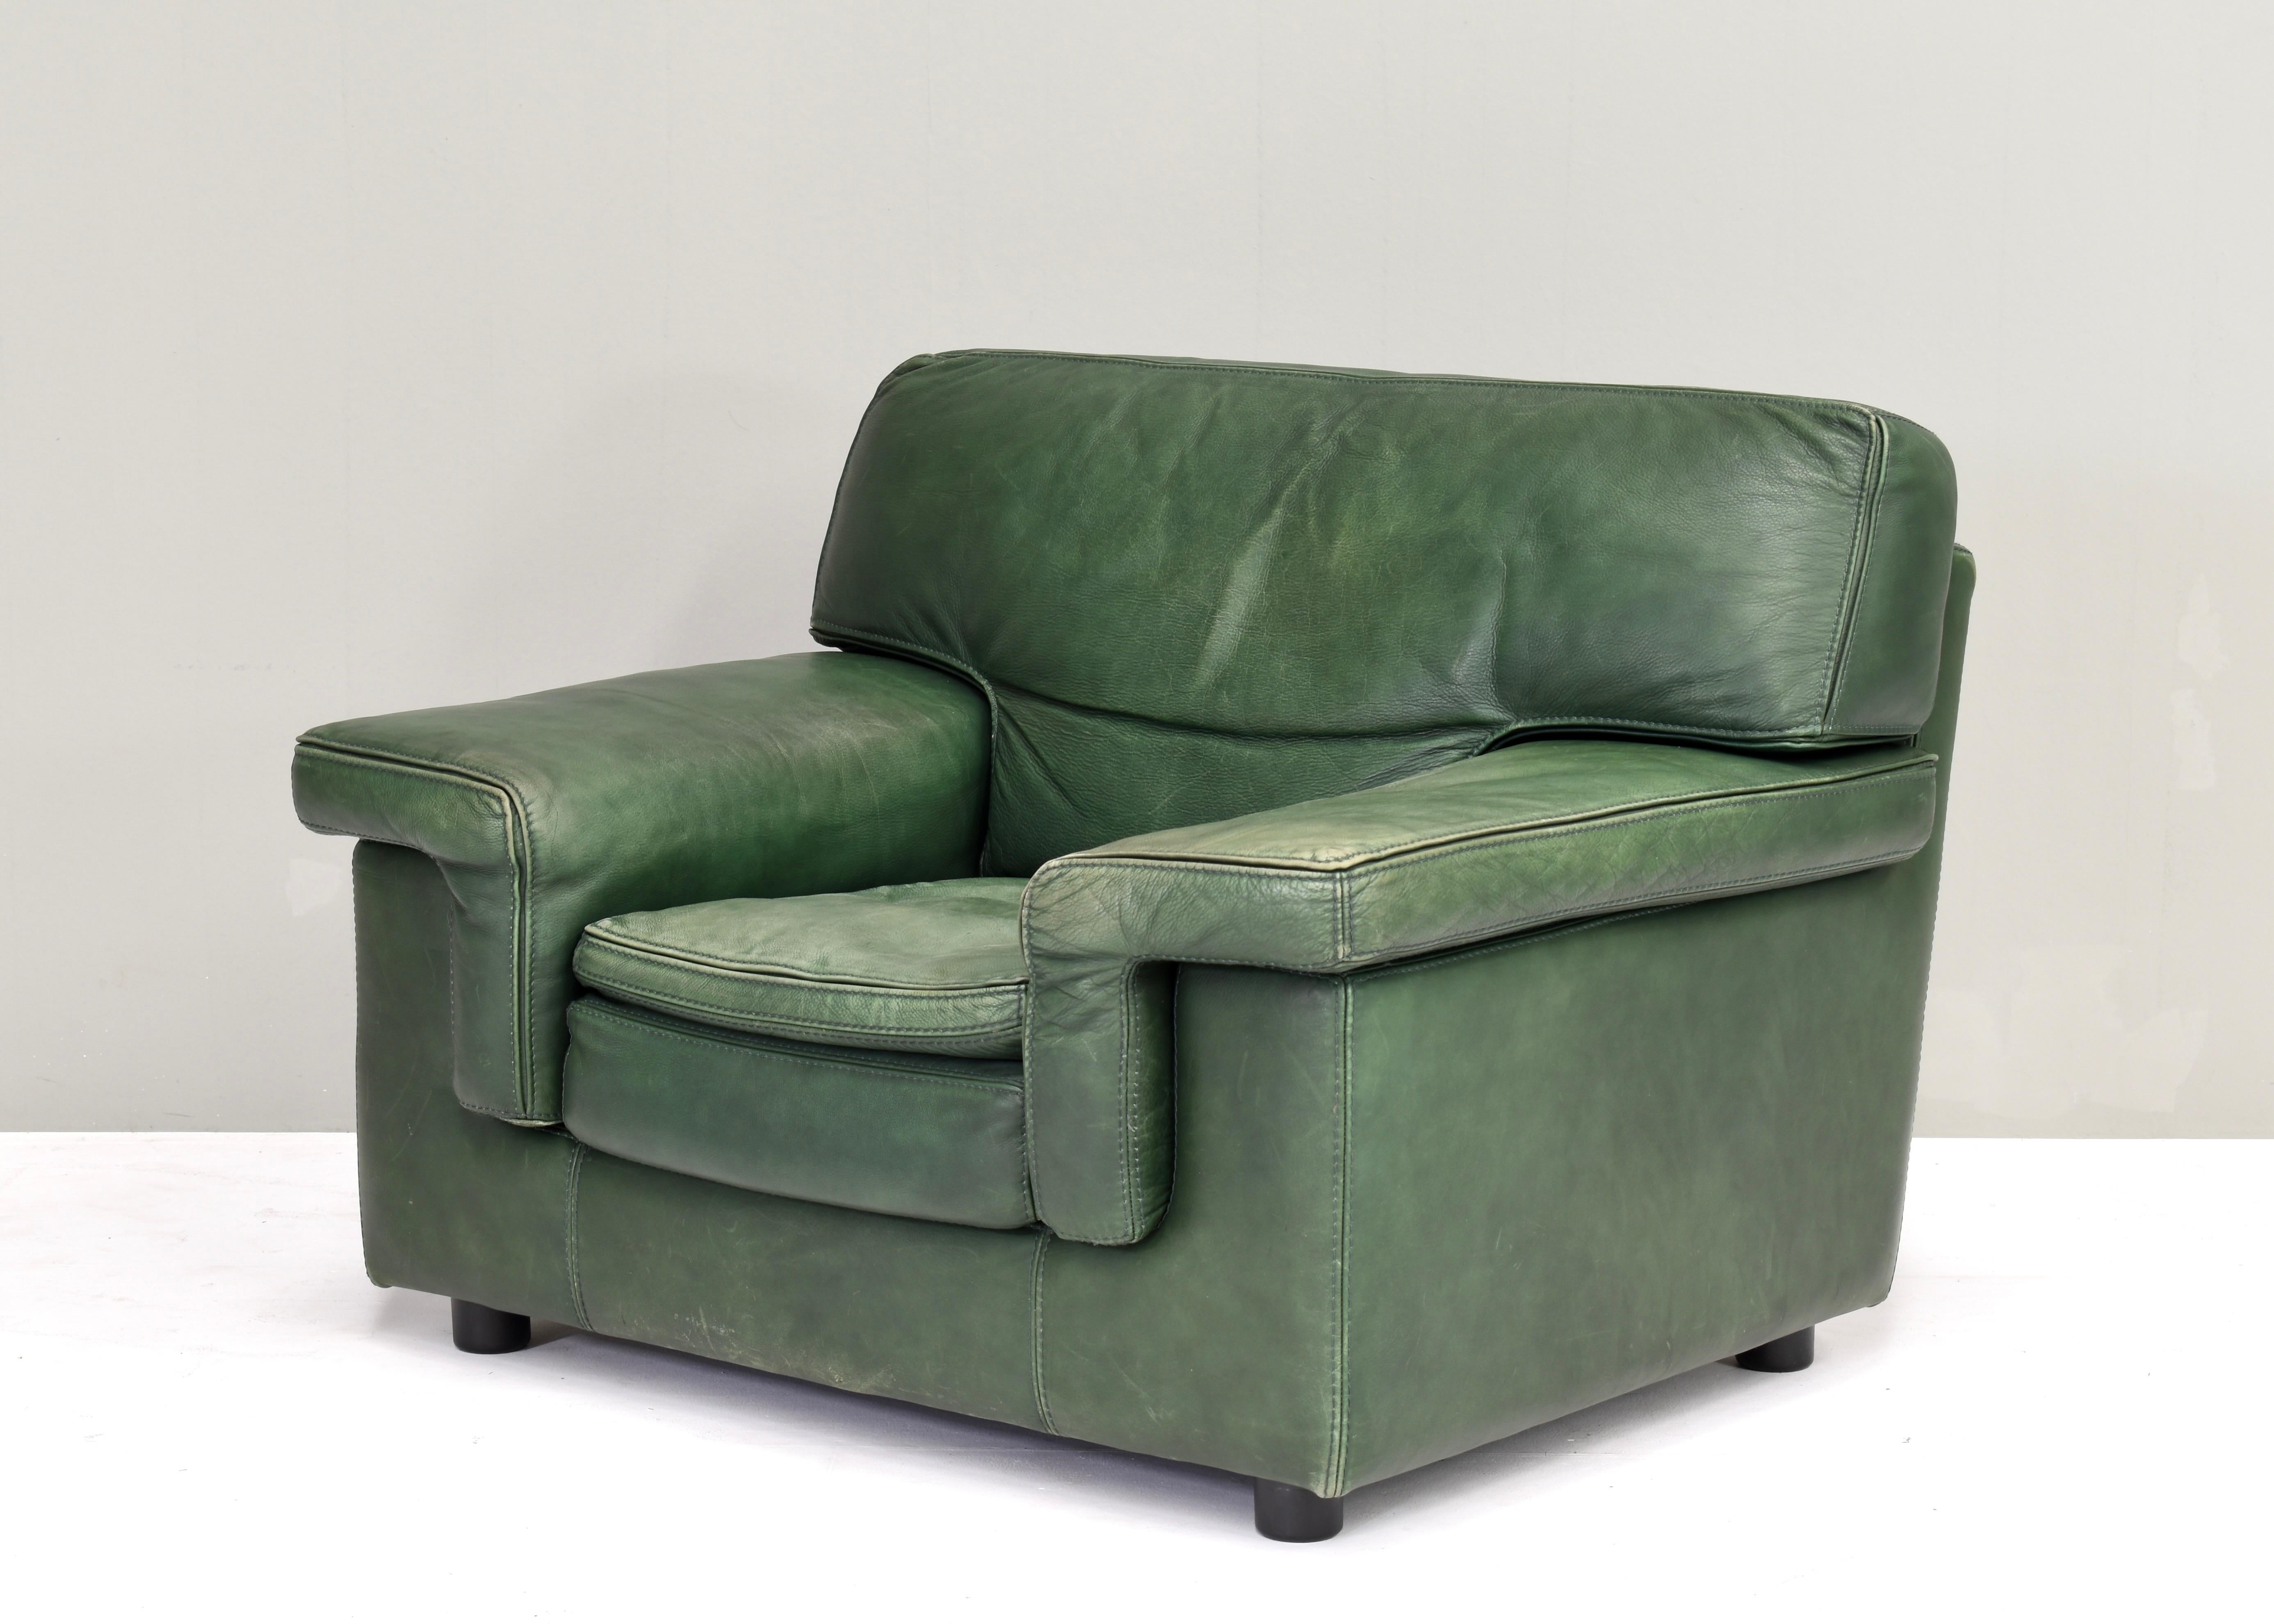 Chaise longue très confortable de Roche Bobois, France / Italie - circa 1970.
Le cuir présente une belle patine avec des signes normaux d'âge et d'utilisation. Pas de déchirures ni de trous.
La chaise est étiquetée Roche Bobois, Italie. Bien que